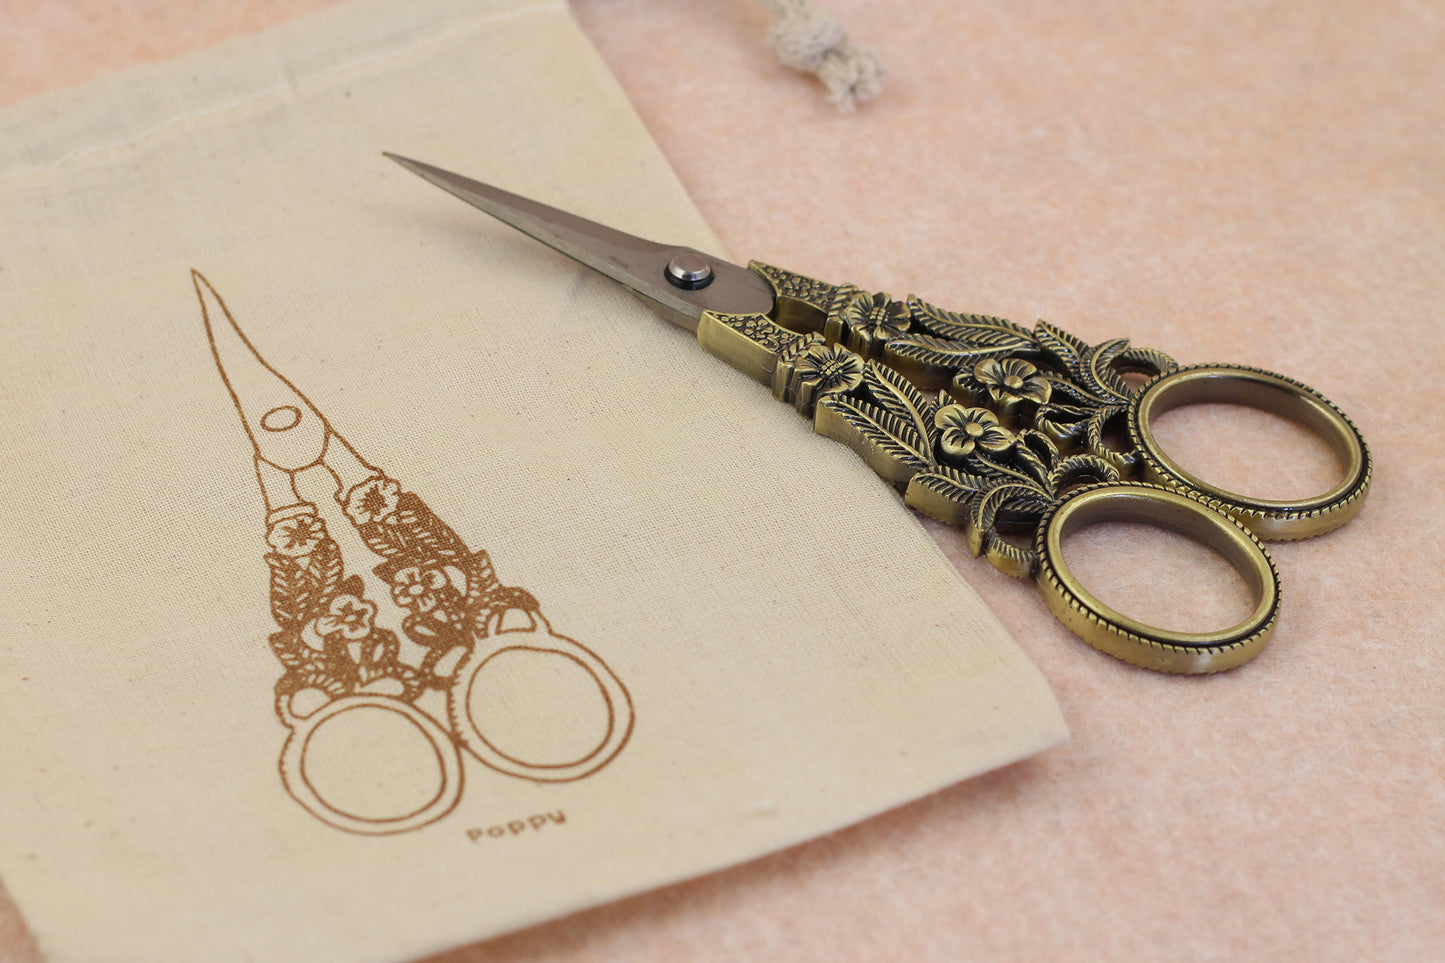 Embroidery Scissors - Poppy